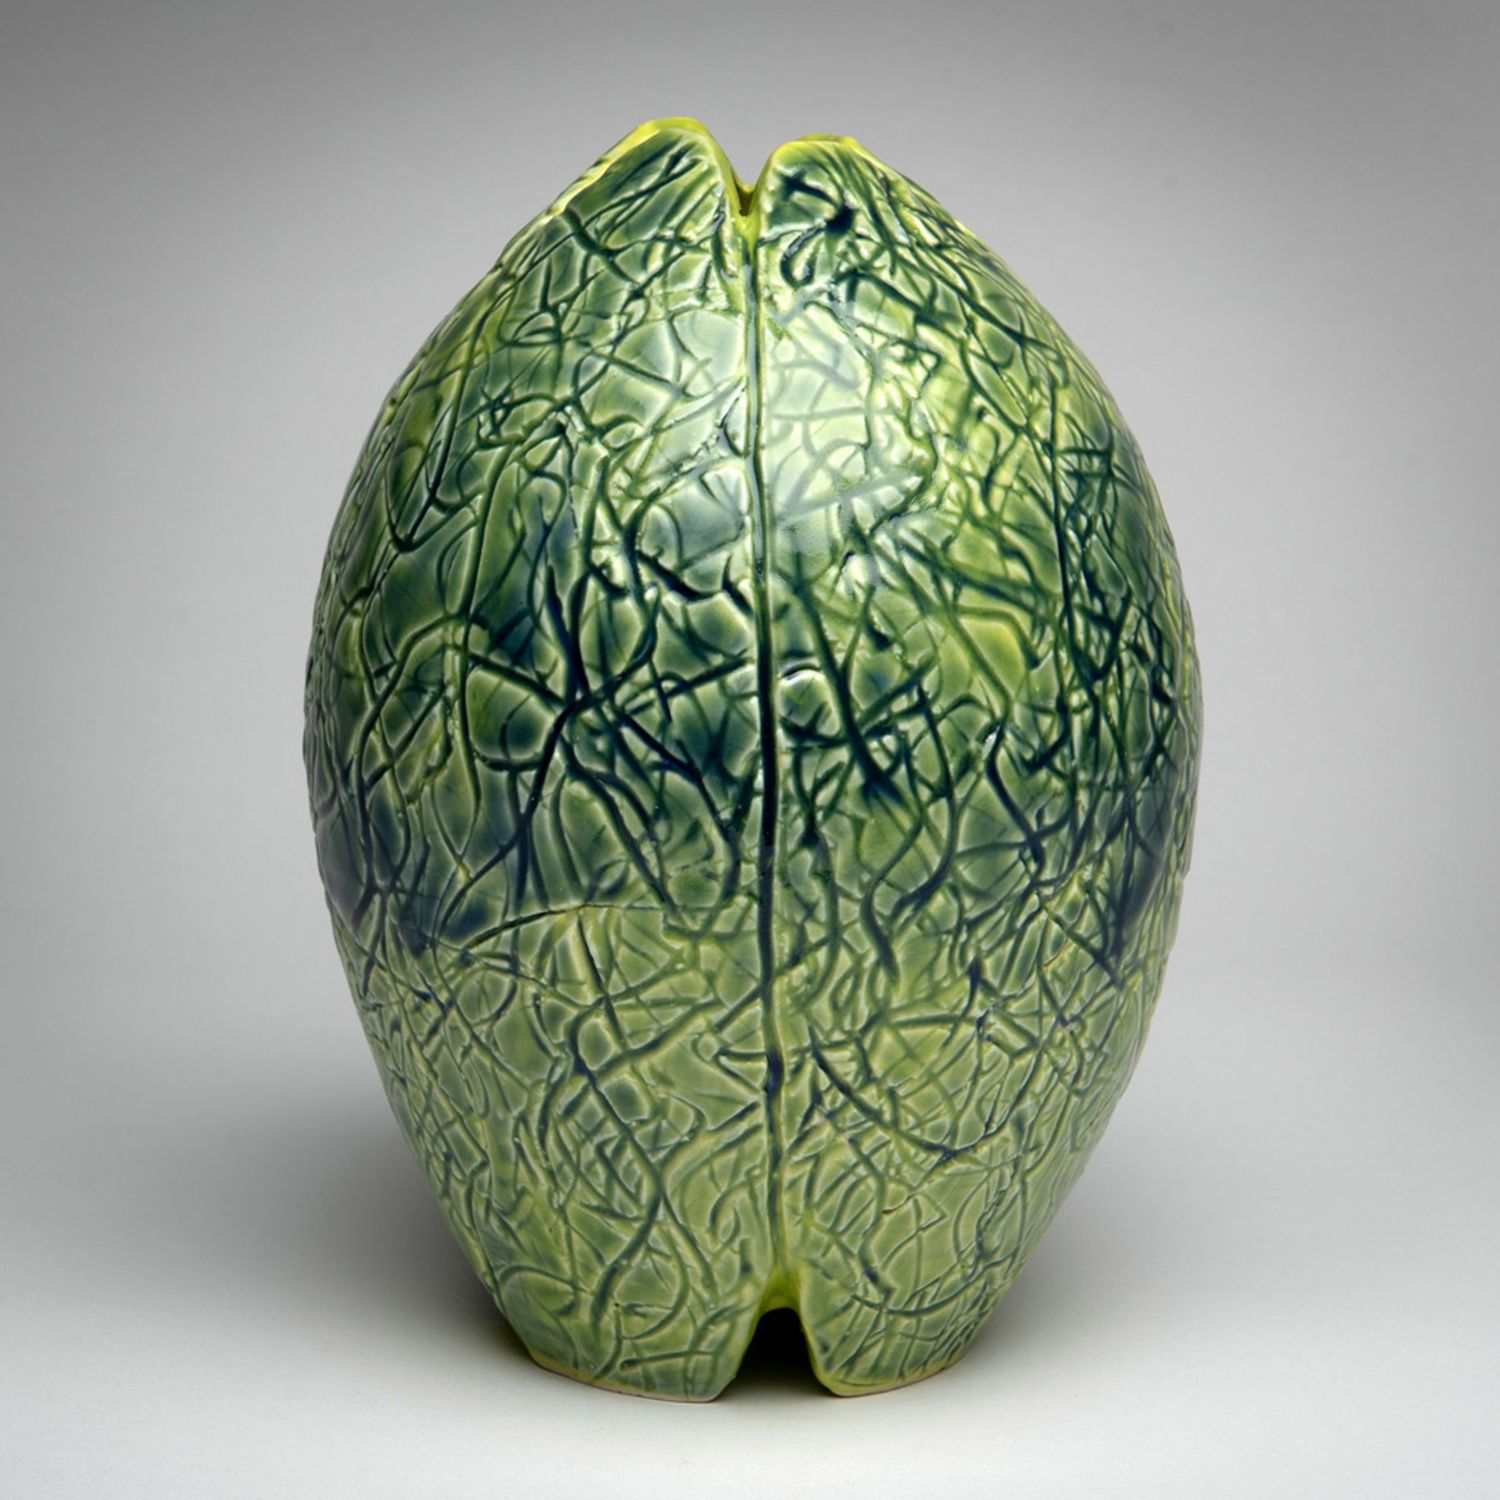 Arlene Kushnir: Green Chartreuse Vase Product Image 2 of 2